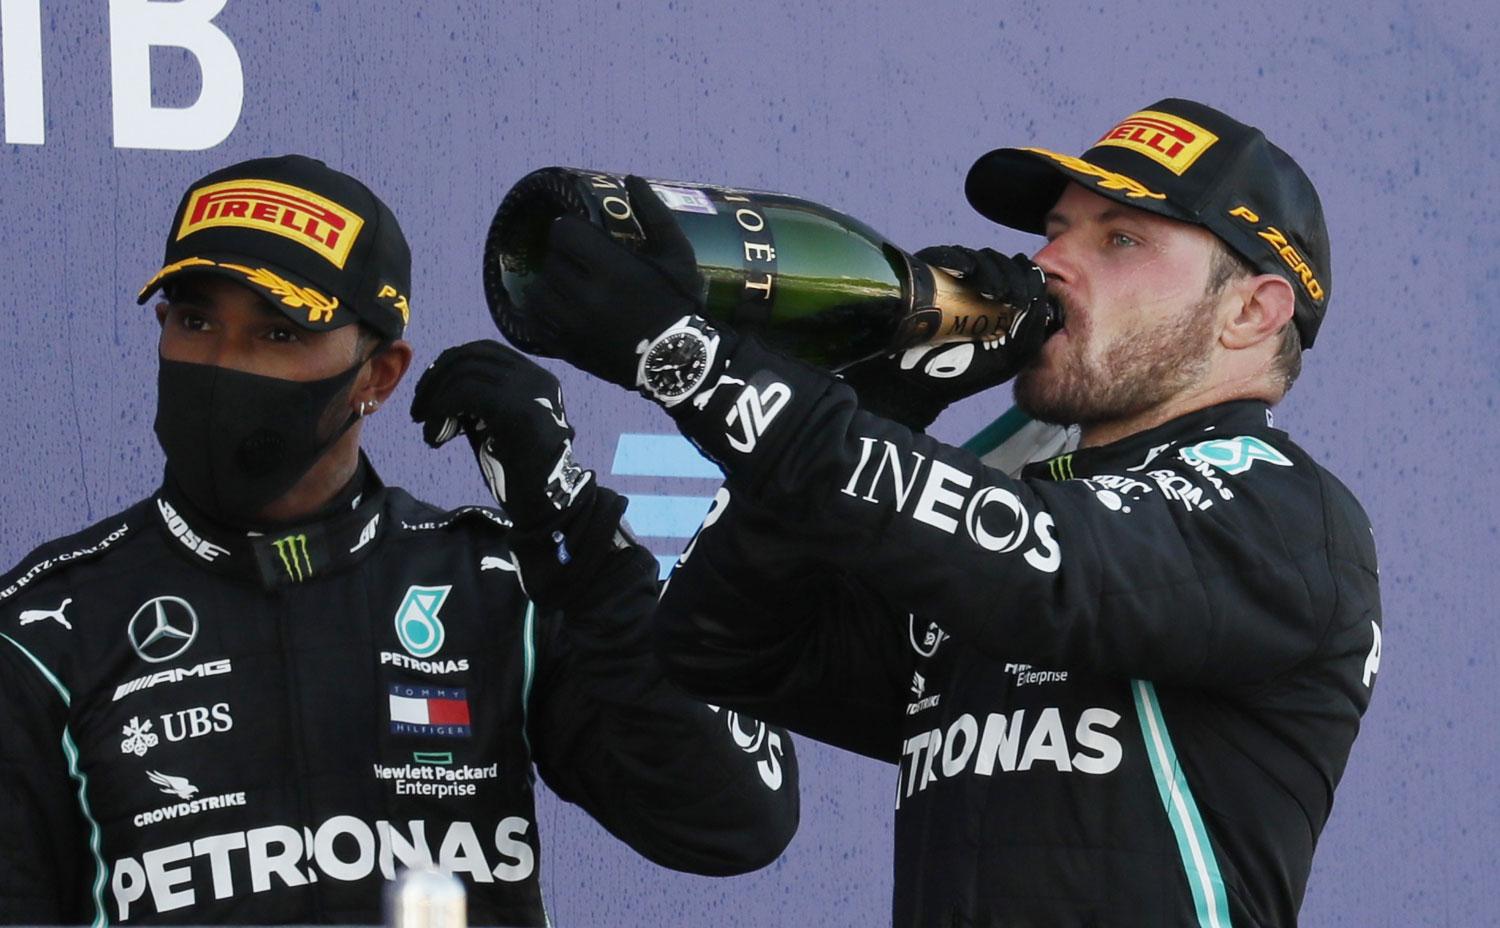 FESTEJO. En el podio, Bottas y Hamilton ya son una fija en la temporada.